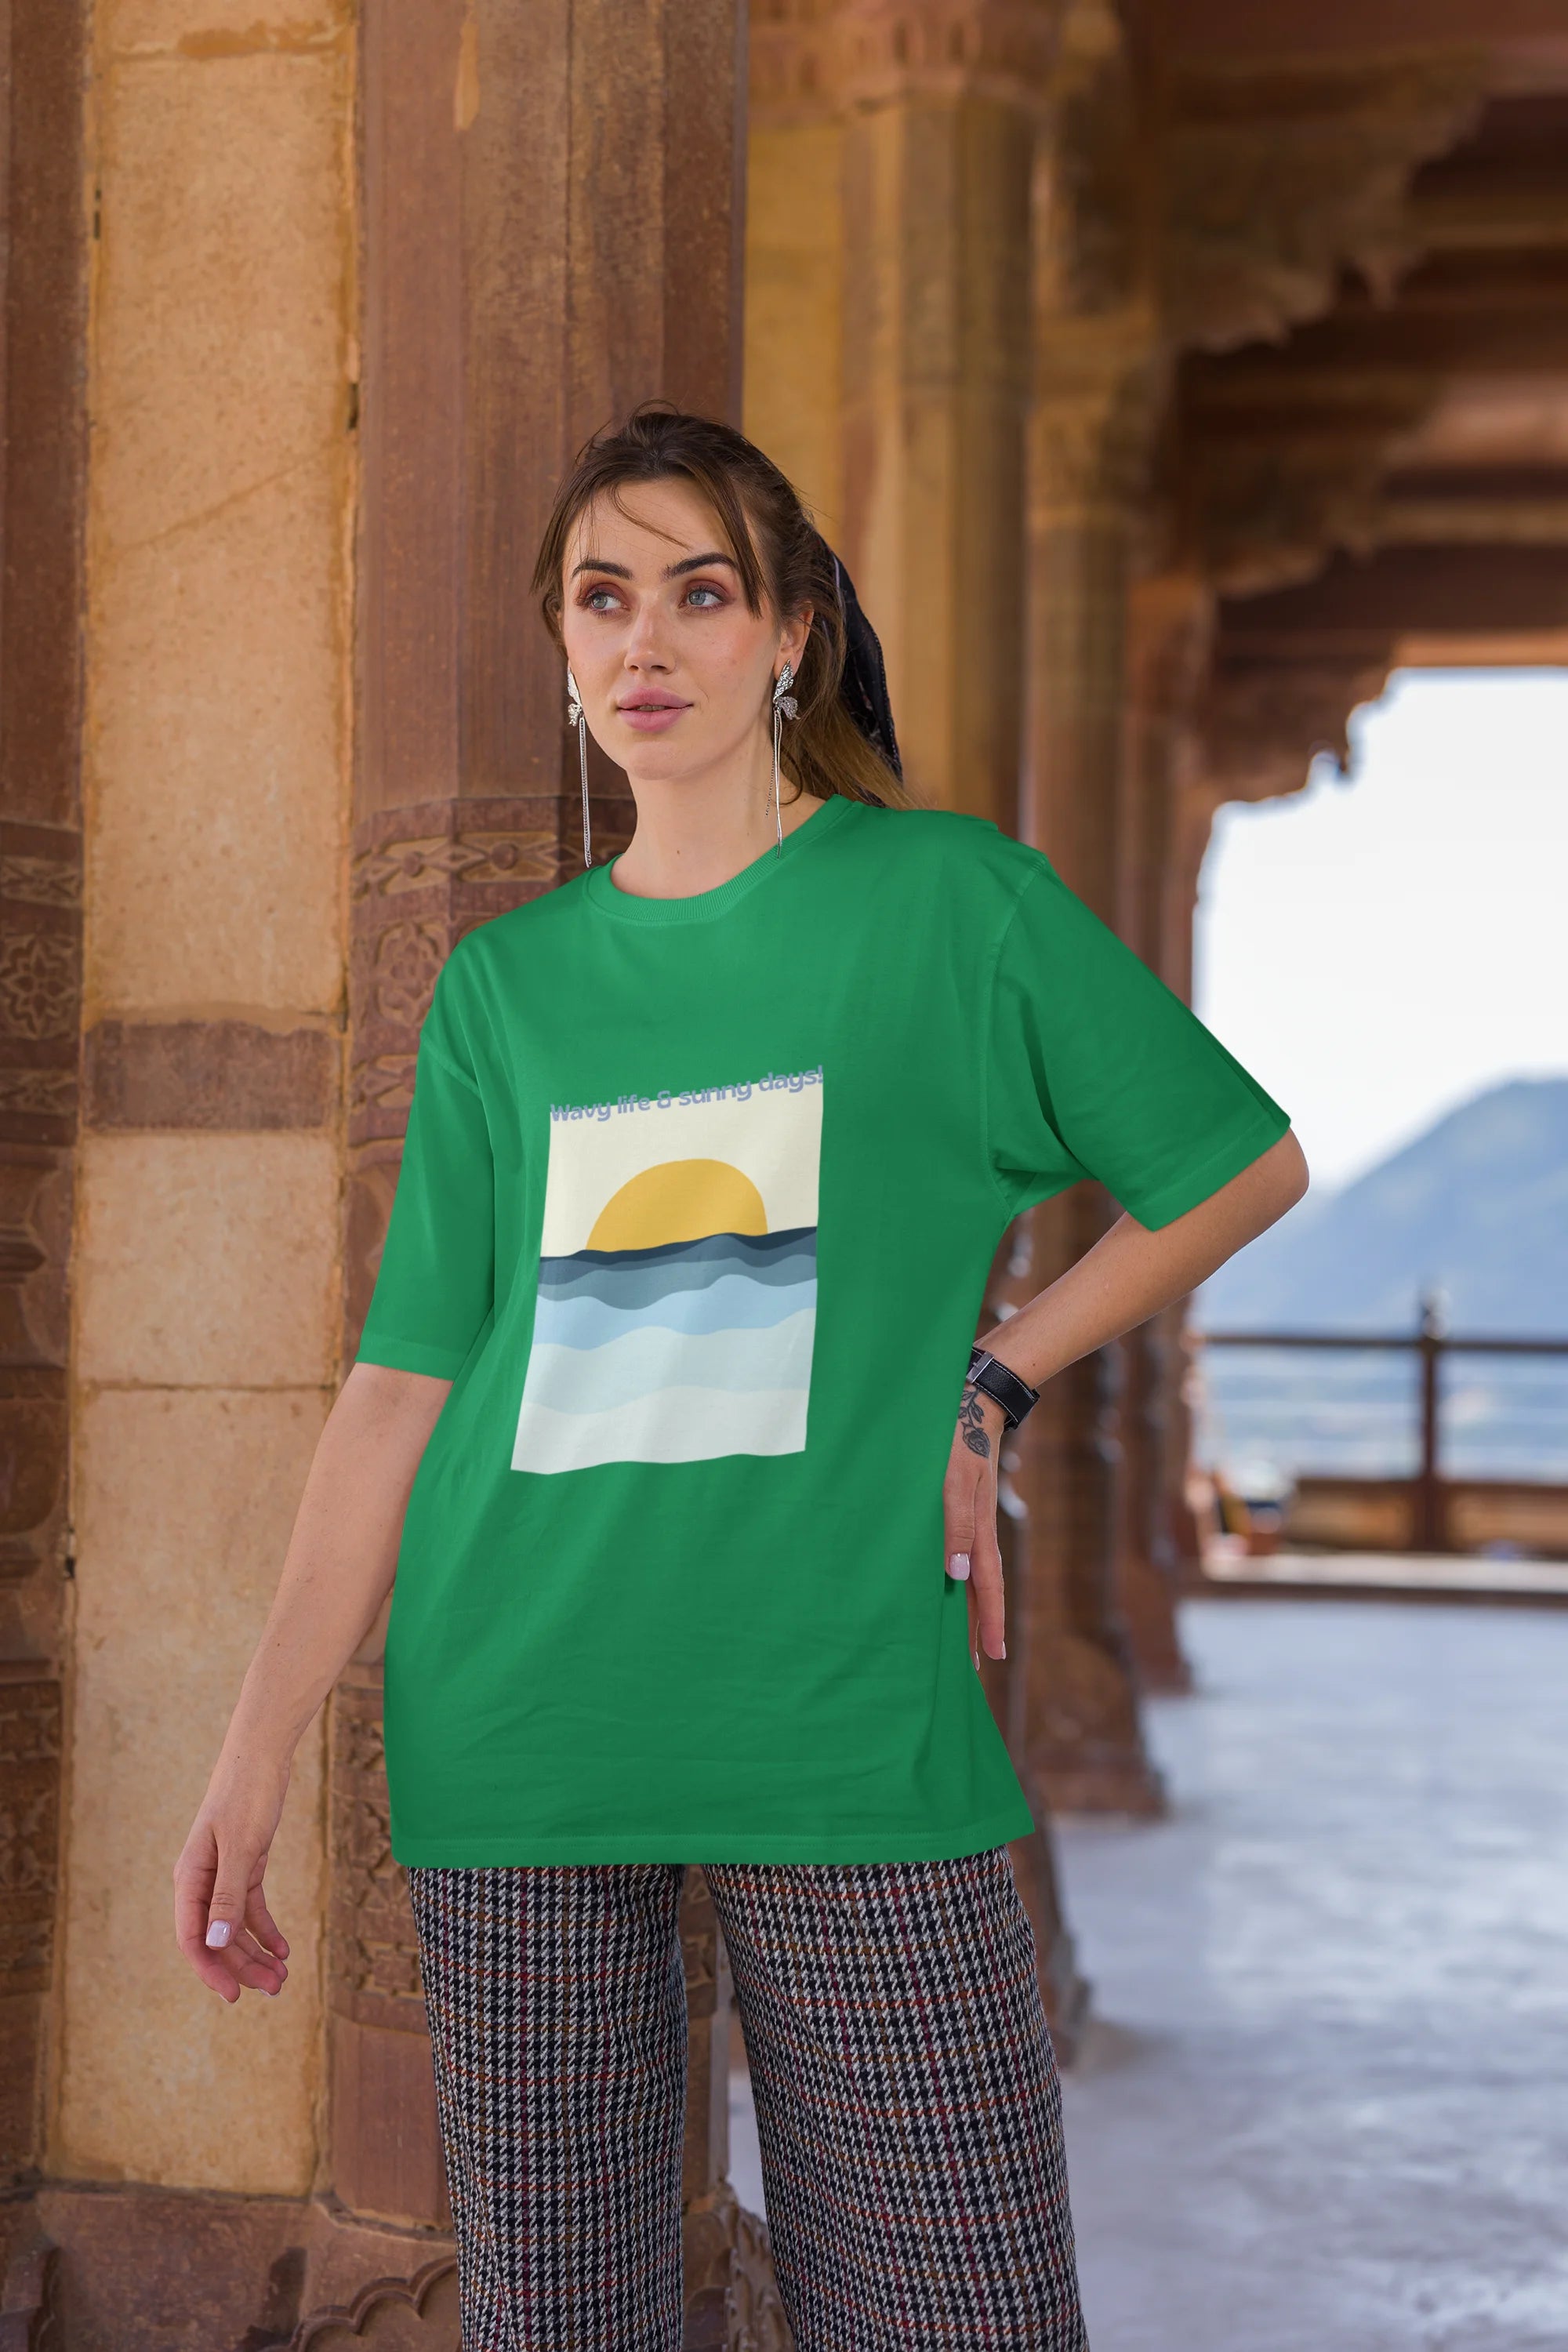 Wavy life and sunny days | Retro Theme | Premium Oversized Half Sleeve Unisex T-Shirt